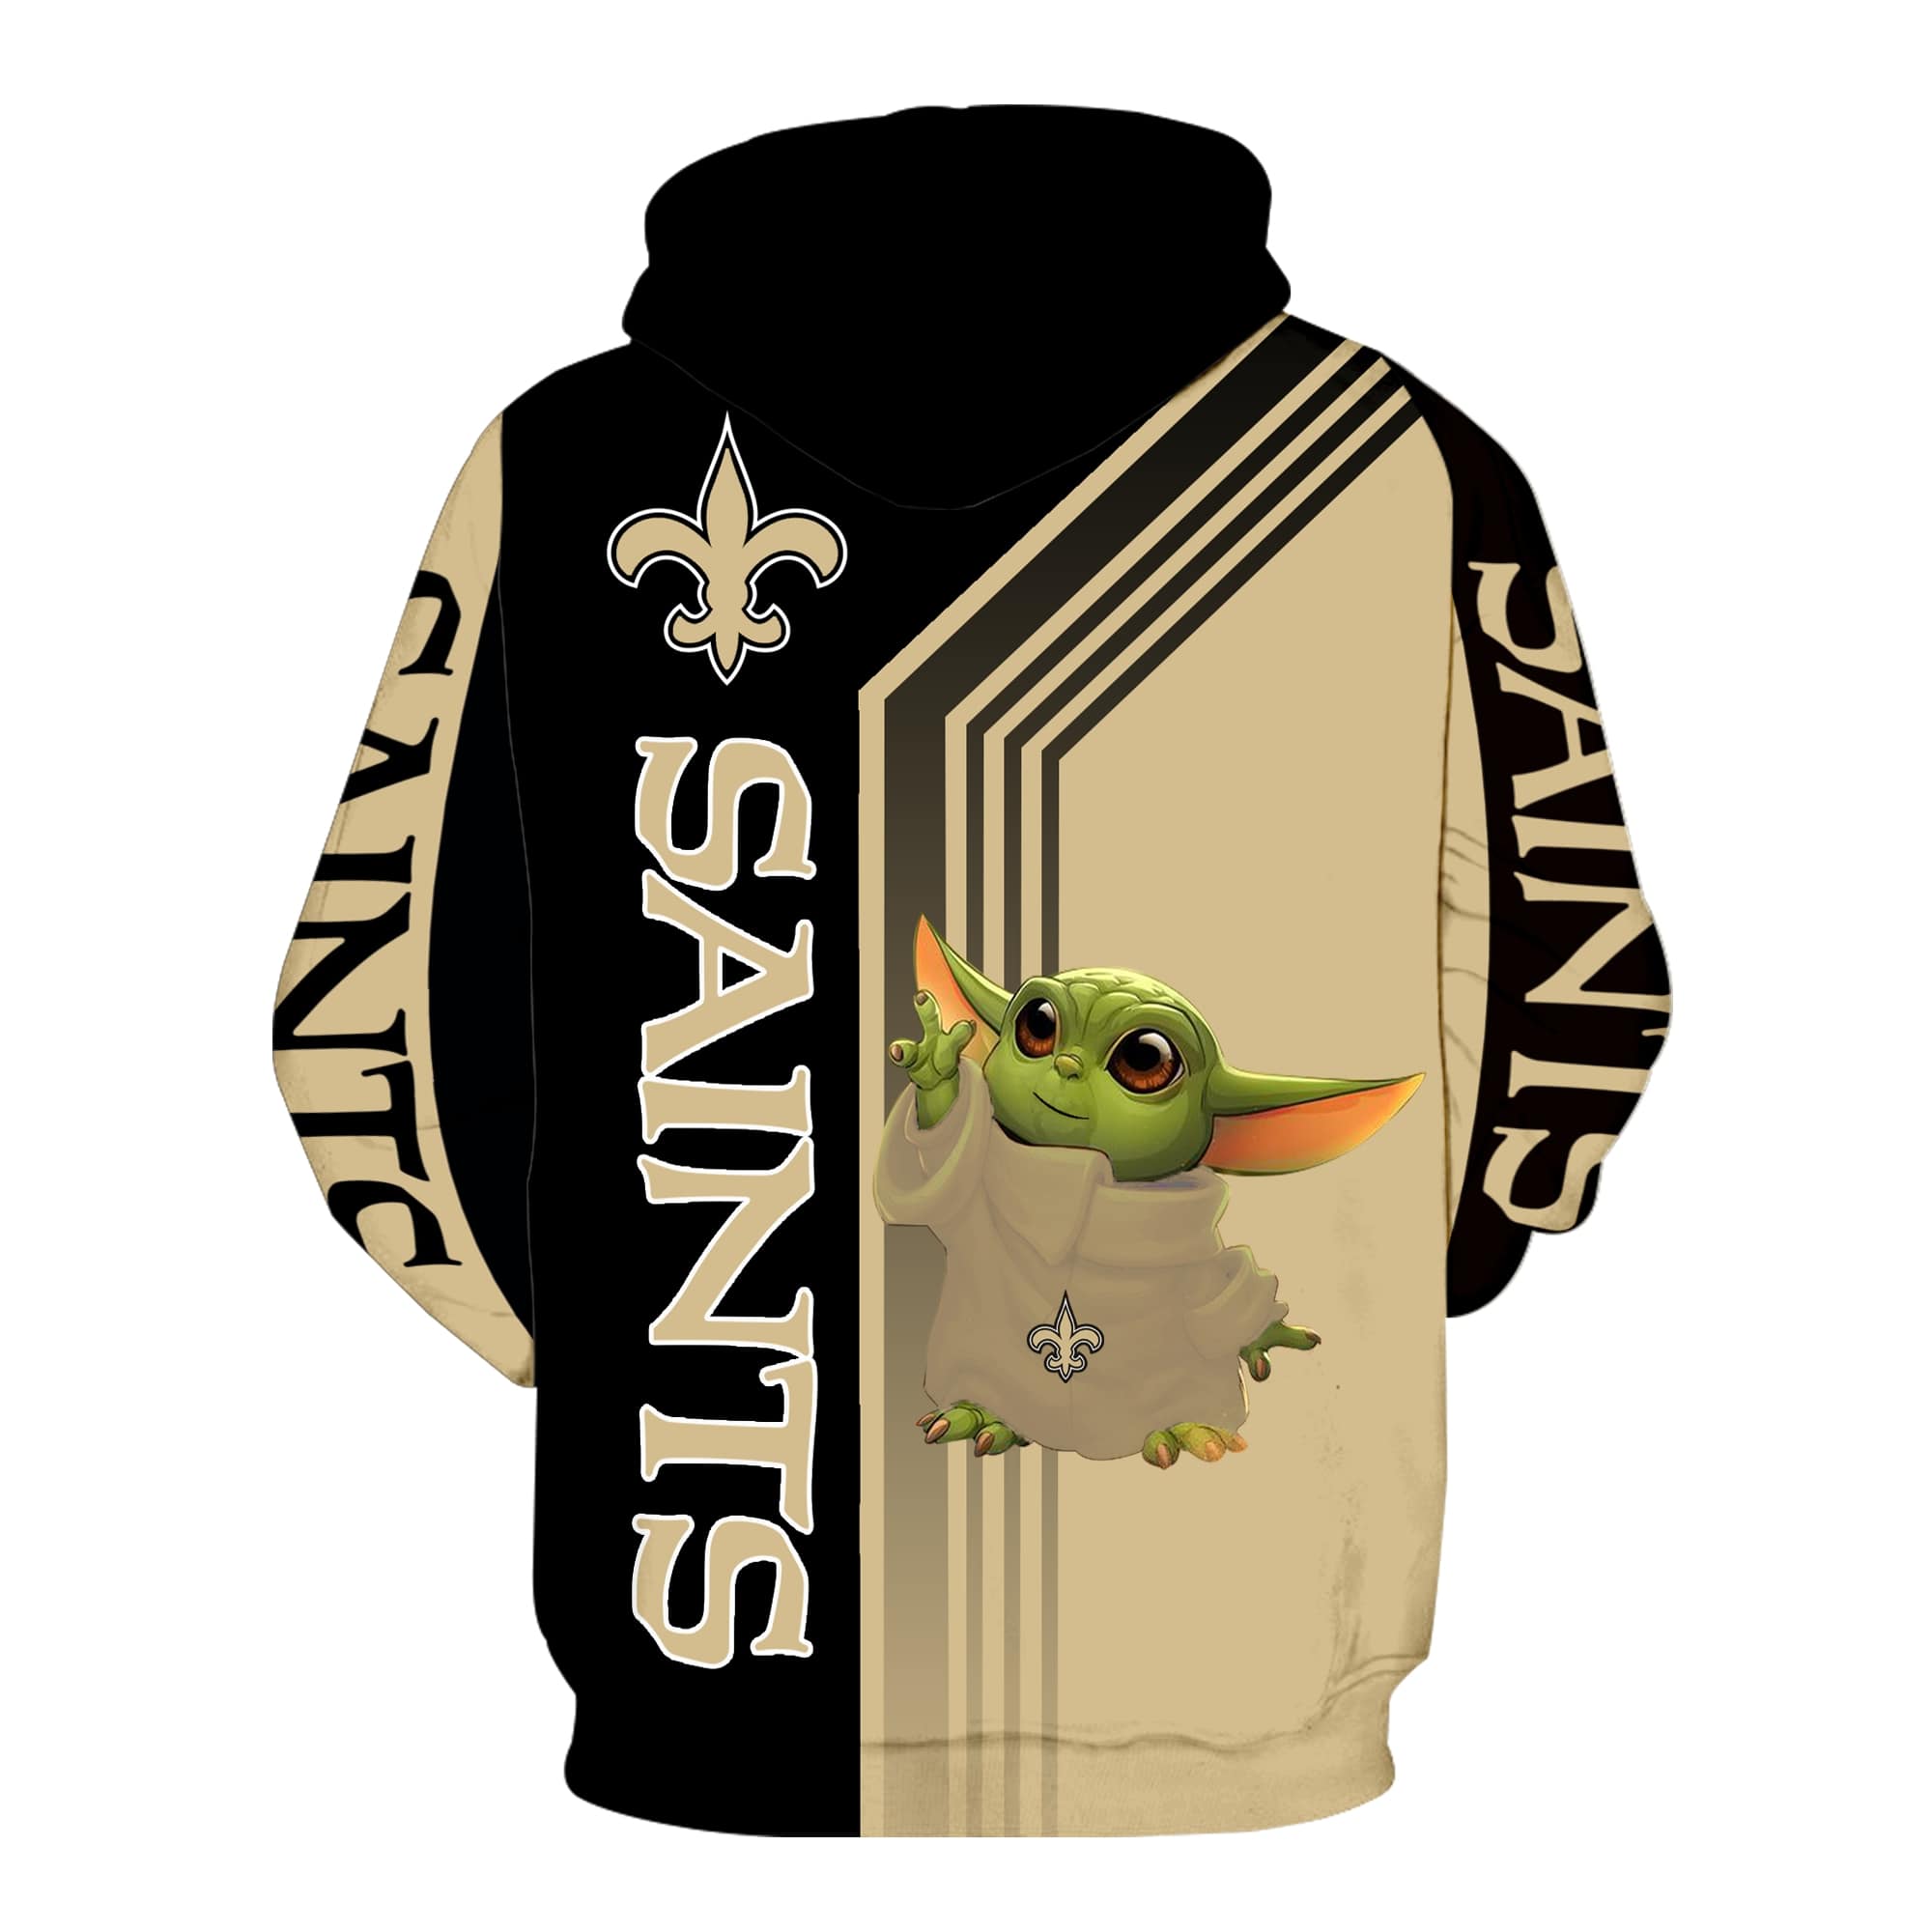 New orleans saints baby yoda full printing hoodie - back